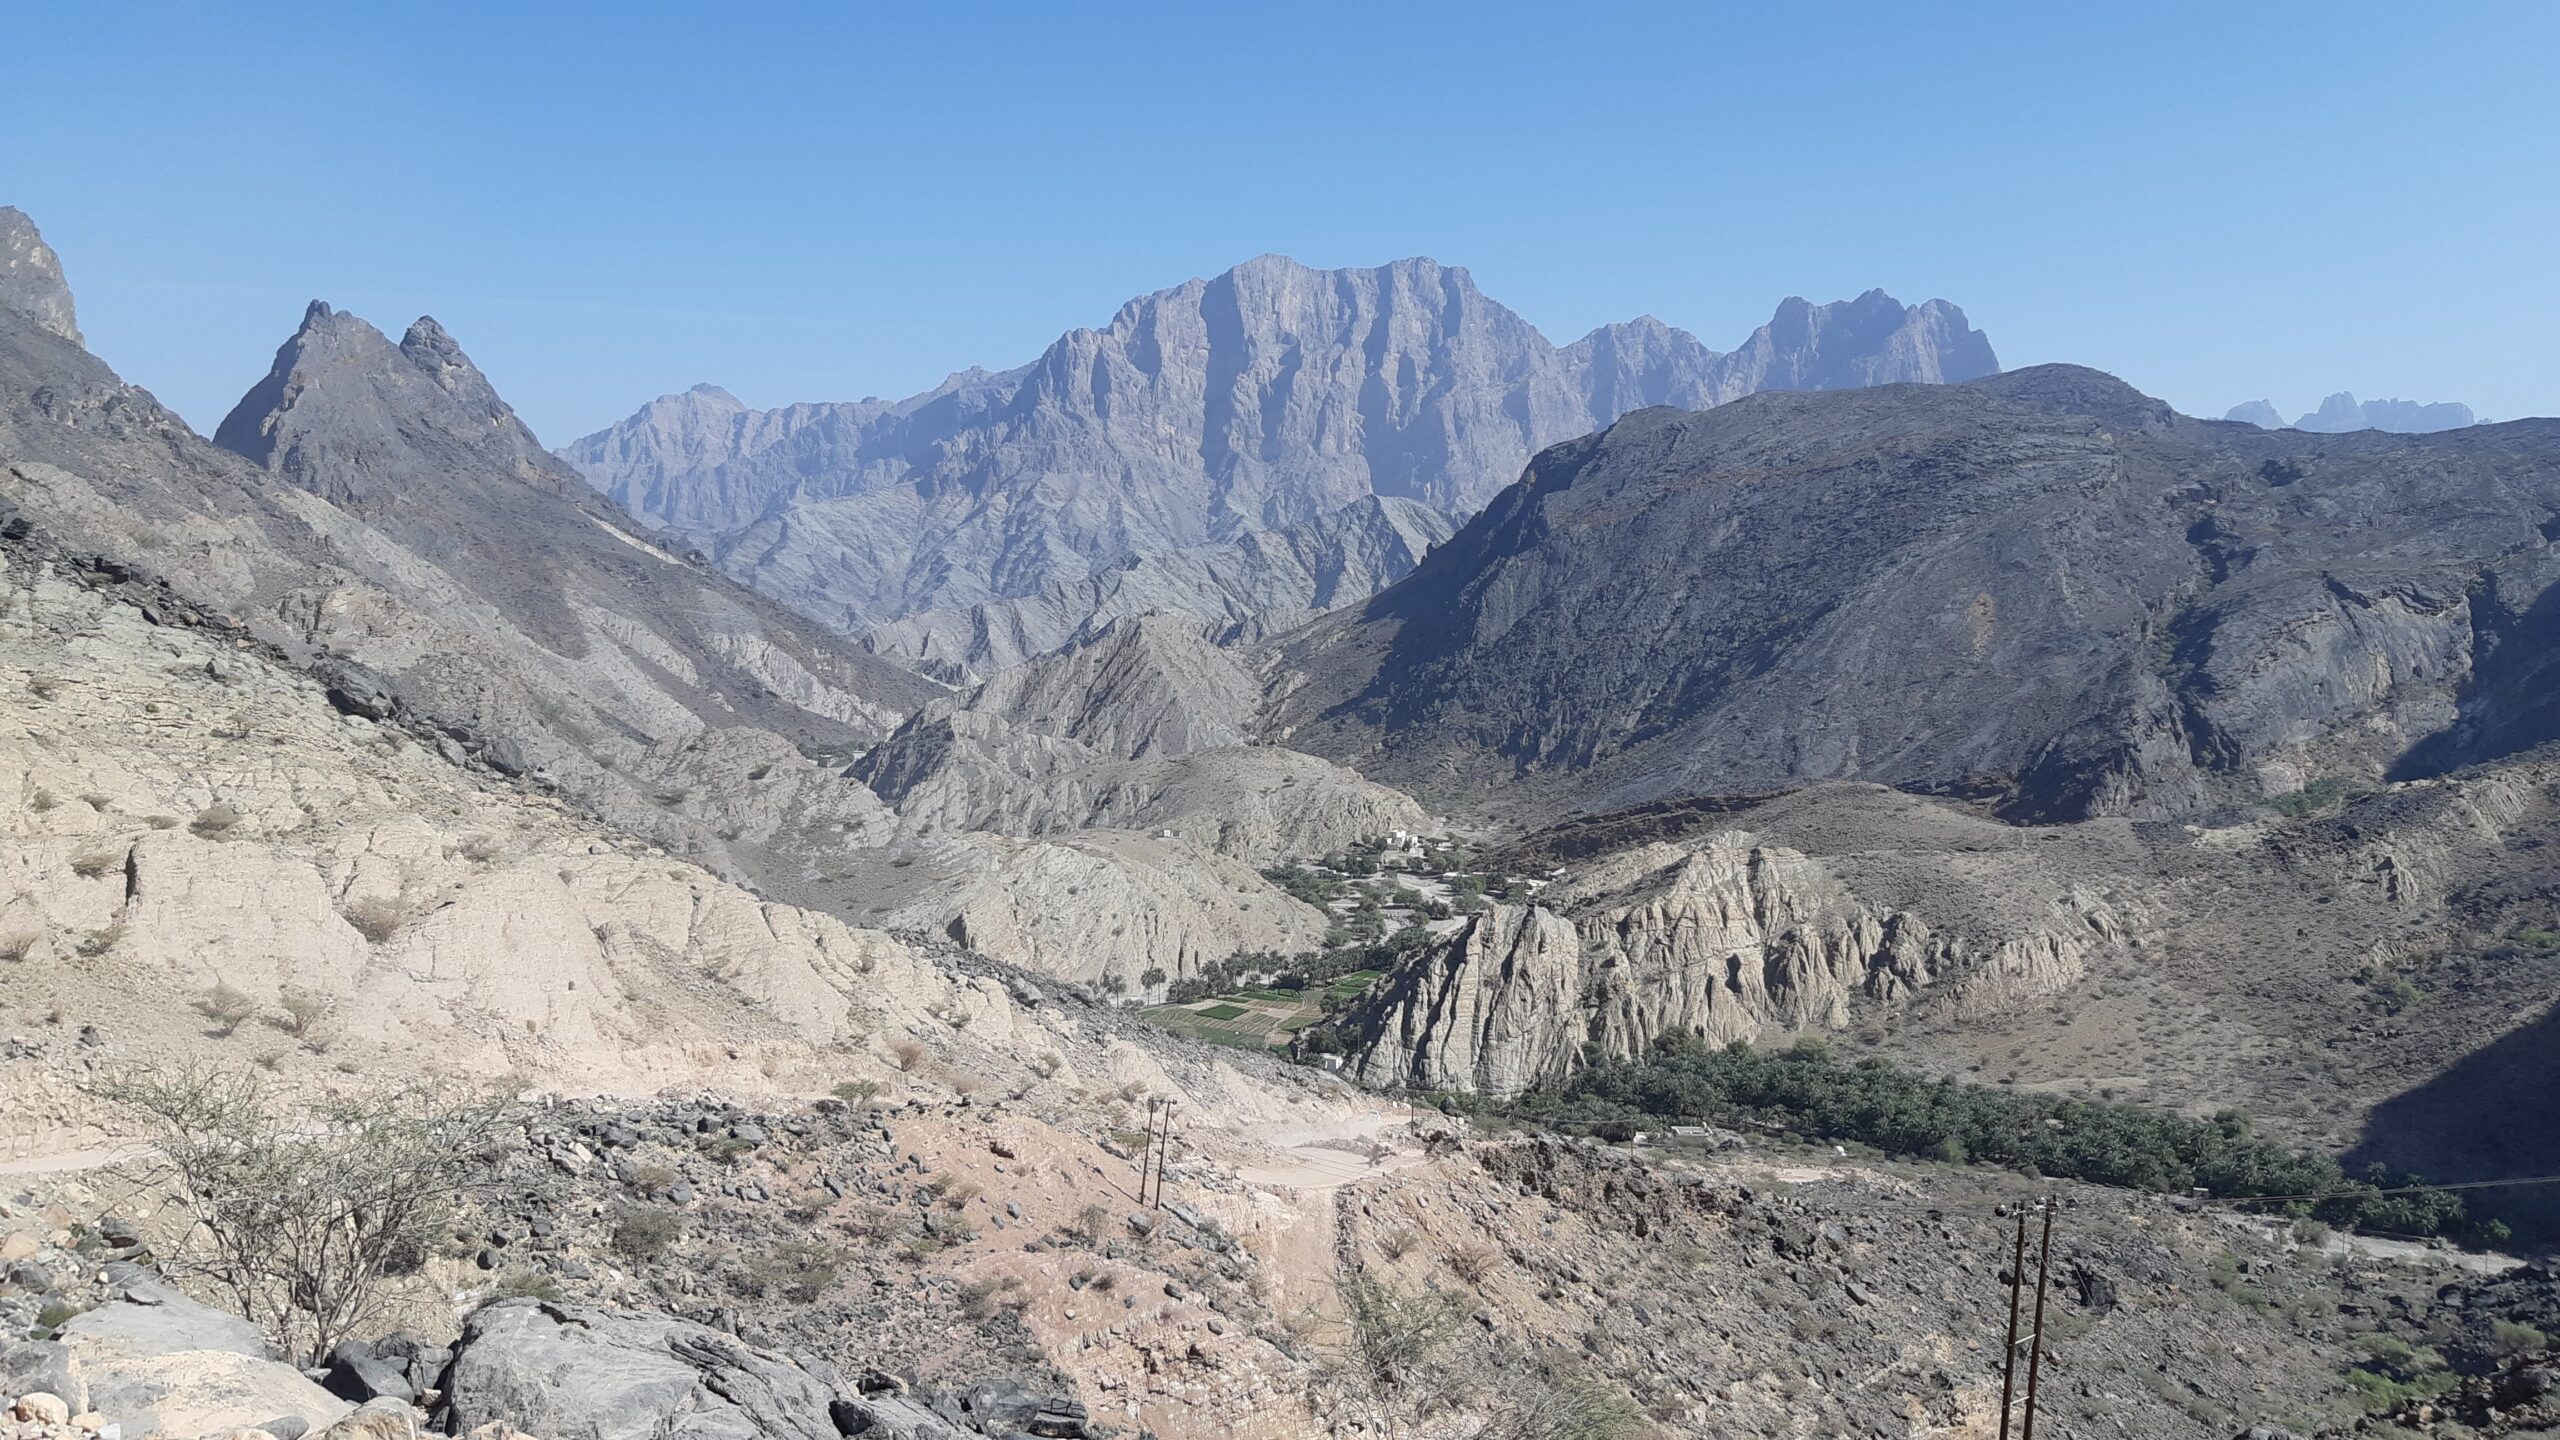 Góry Al Hajar, Oman,Wspaniałe krajobrazy Al Hajar,Wspinaczka w górach Al Hajar,Przygoda w omaniąskich górach,Wędrowanie w Al Hajar,Oman, piękno górskich szczytów,Góry Al Hajar i skały,Wyjątkowe widoki na Al Hajar,Skały i wodospady Al Hajar,Odkrywanie przyrody Al Hajar,Oman, tereny górskie,Góry Al Hajar - naturalne cuda,Tradycyjne wioski w górach,Malownicze doliny Al Hajar,Wspinaczka skalna w Al Hajar,Noclegi w górach Al Hajar,Oman, przygoda na wysokościach,Rezerwaty przyrody w górach,Flora i fauna Al Hajar,Eksploracja Al Hajar w Omanie